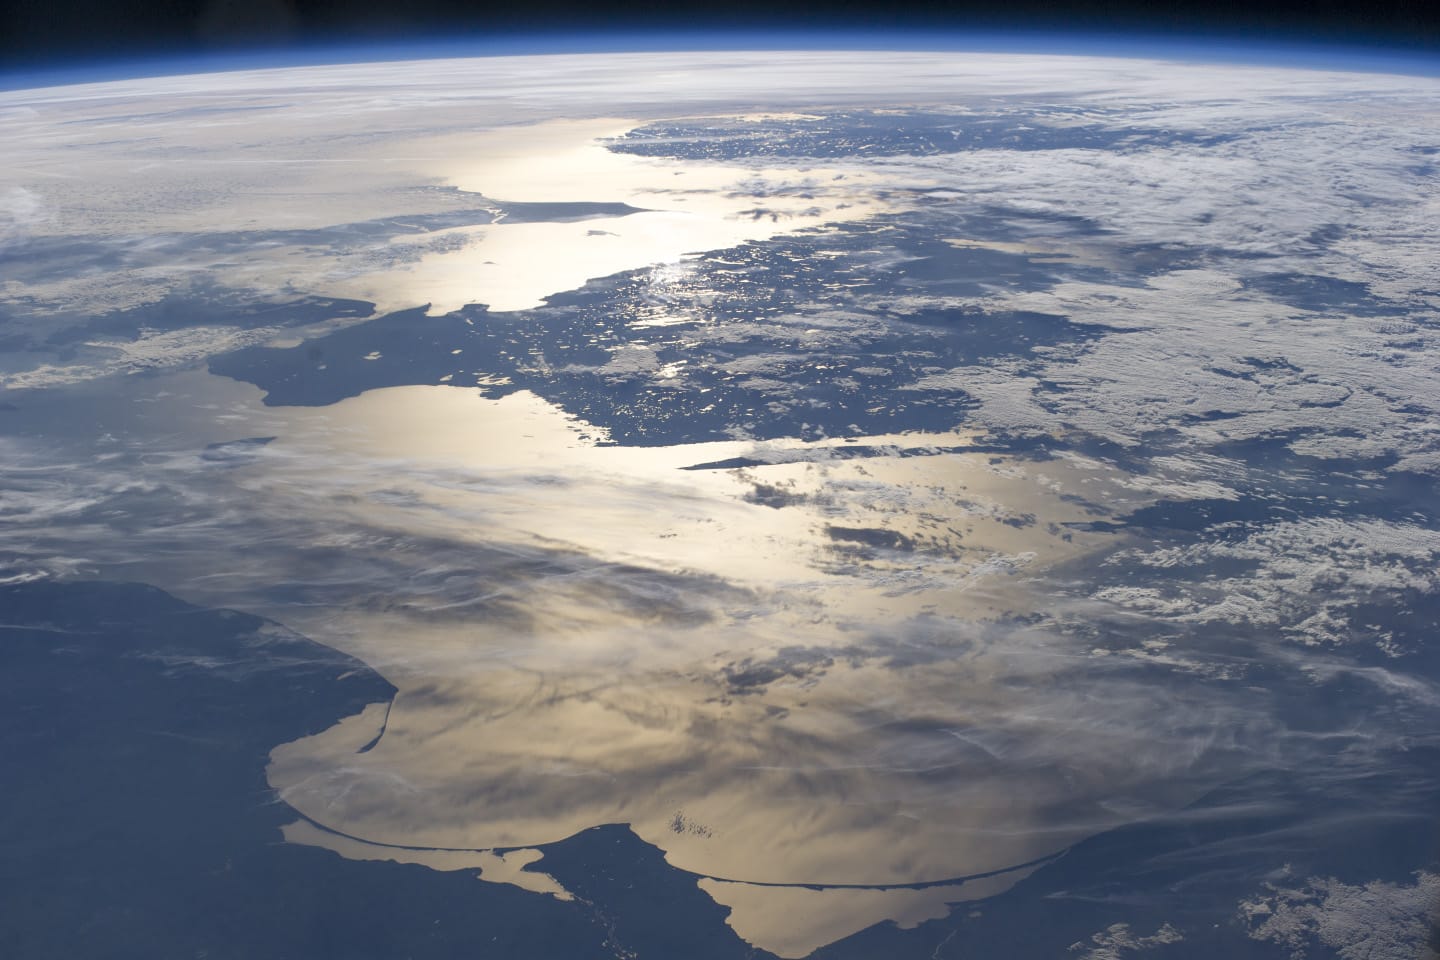 Foto do mar baltico tirada da estação espacial internacional em junho de 2014